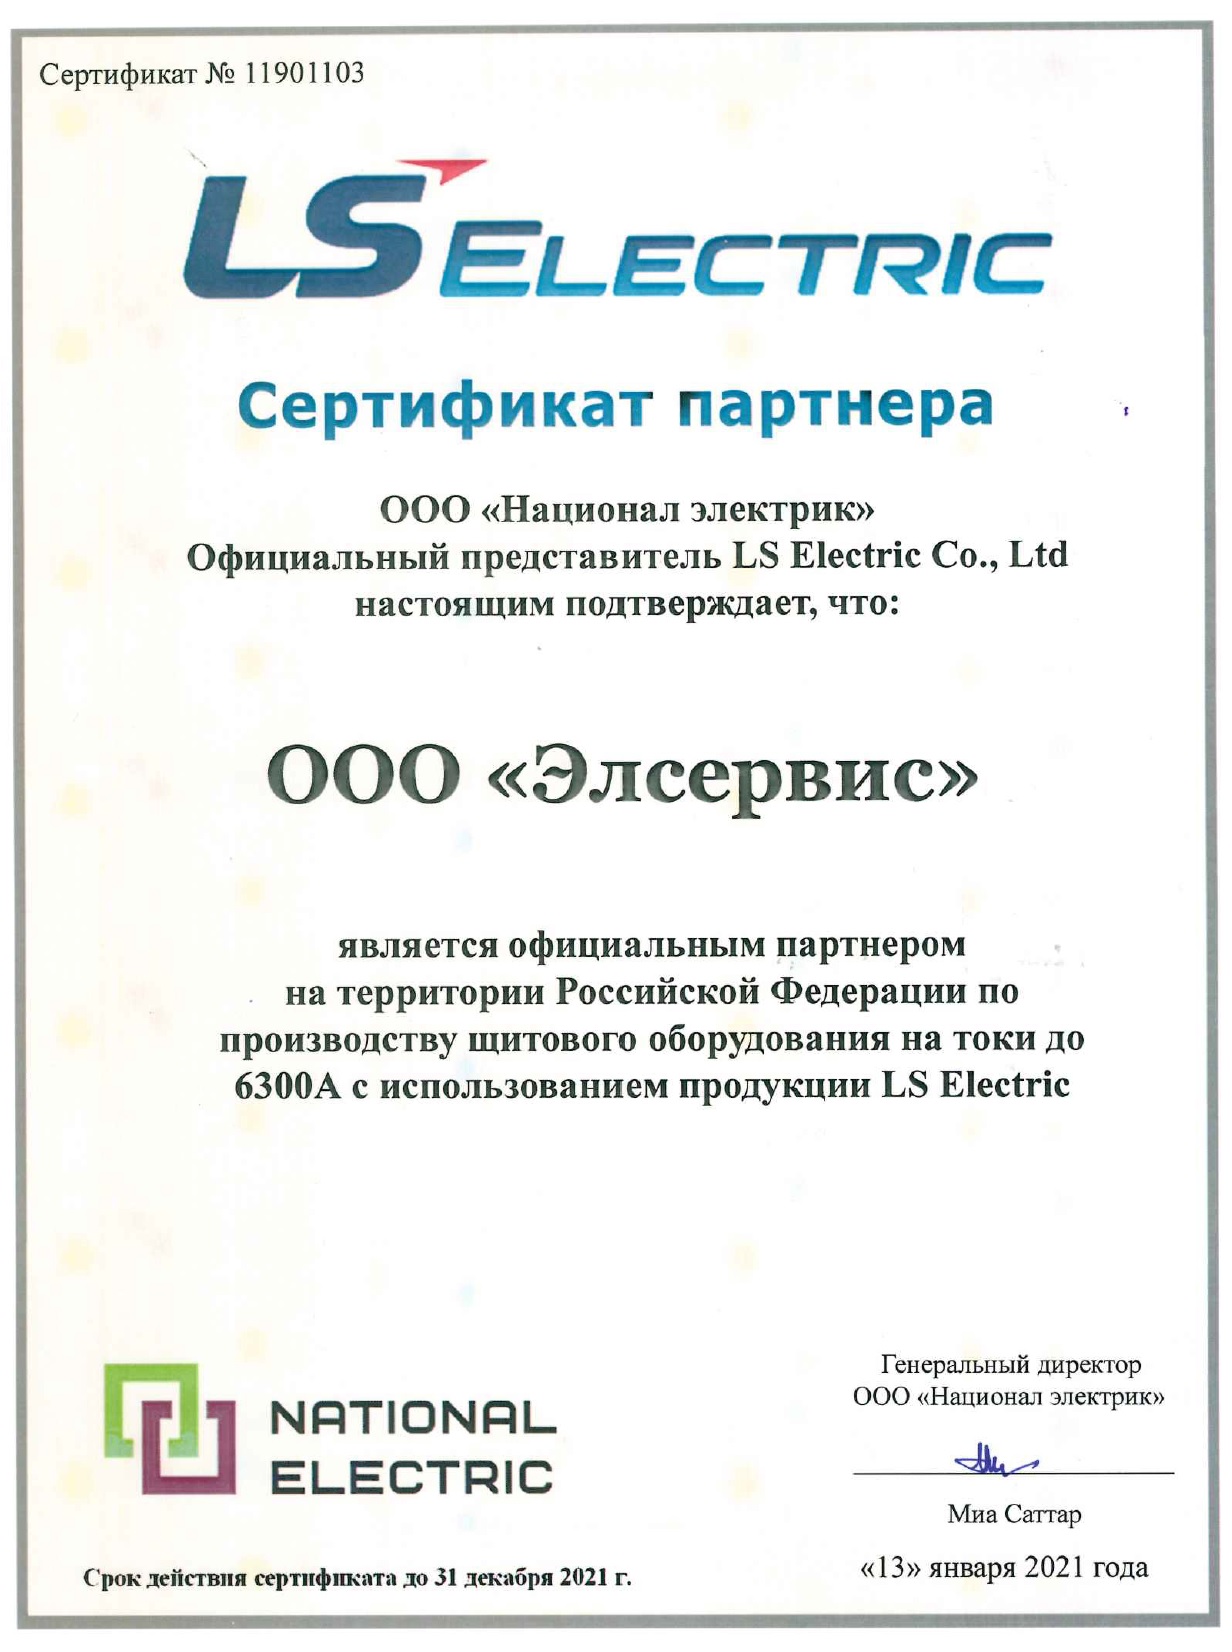 Сертификат щитовика LS